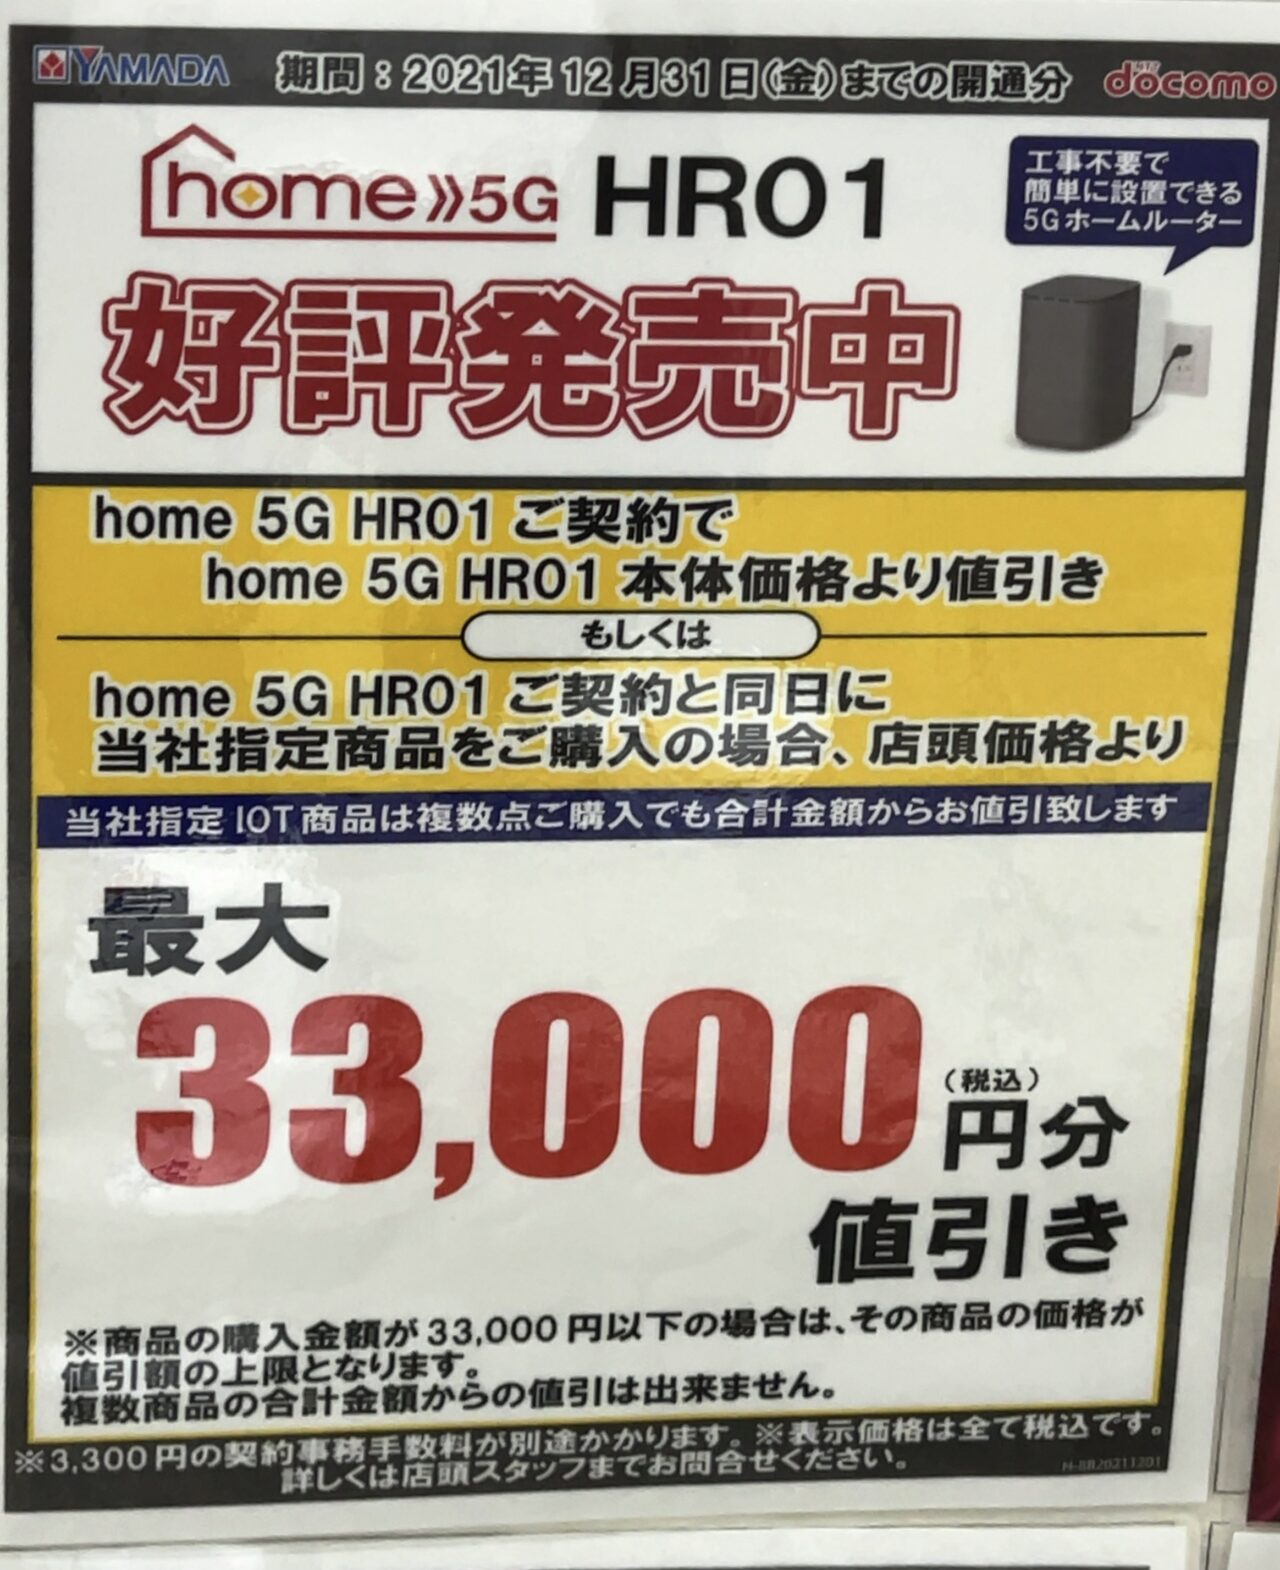 2021/12版】ヤマダ電機でドコモのhome 5Gが割引または指定商品同時購入 